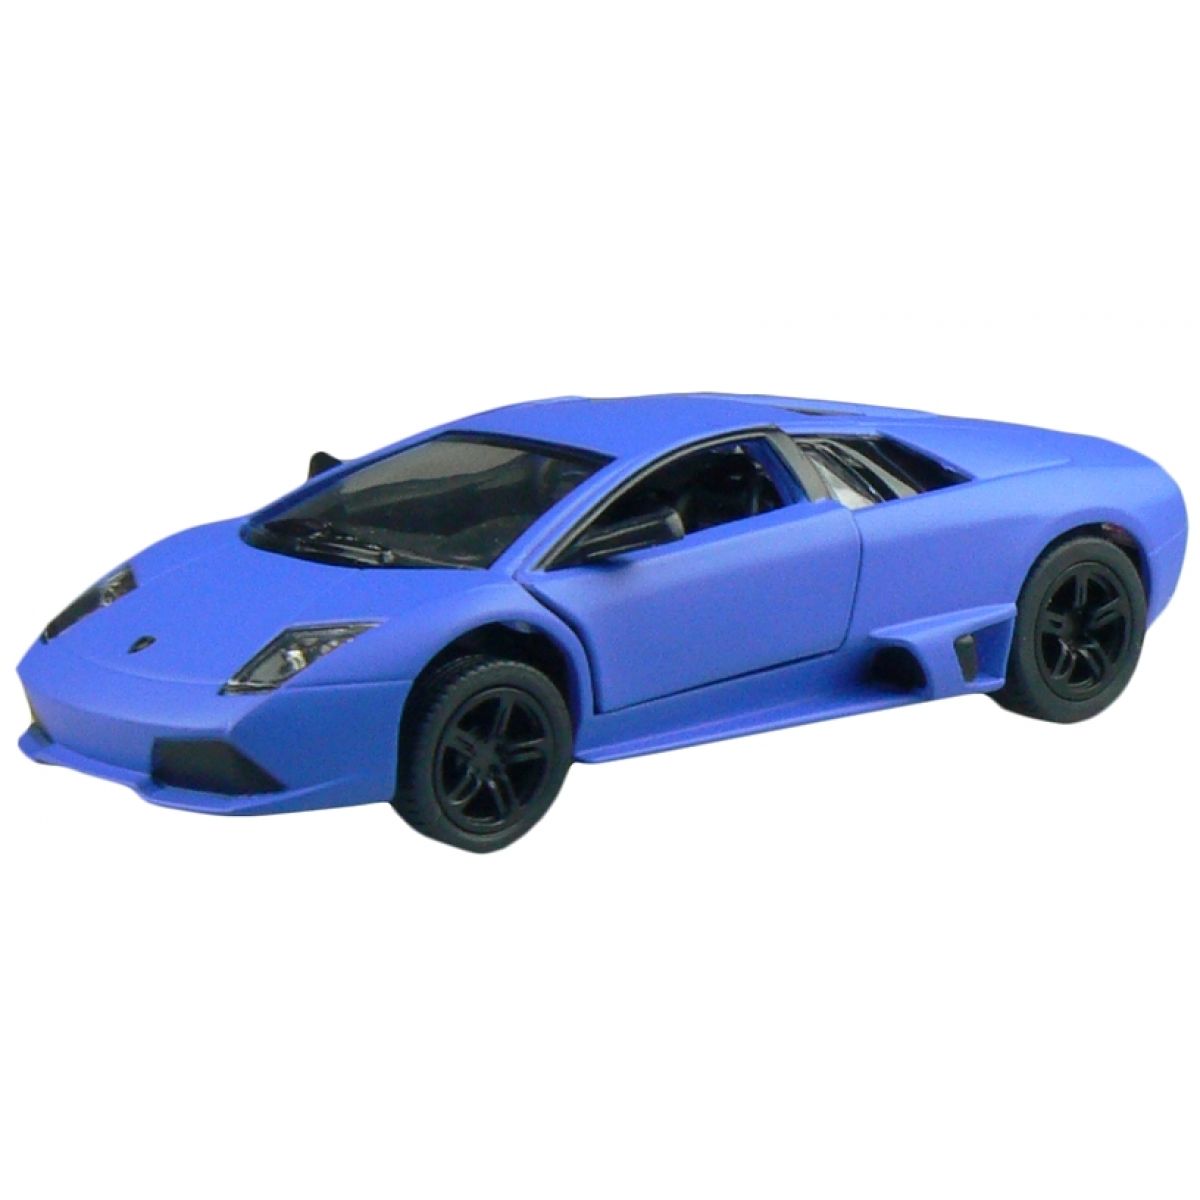 Kinsmart Auto Lamborghini na zpětné natažení 13 cm - Murcielago modré